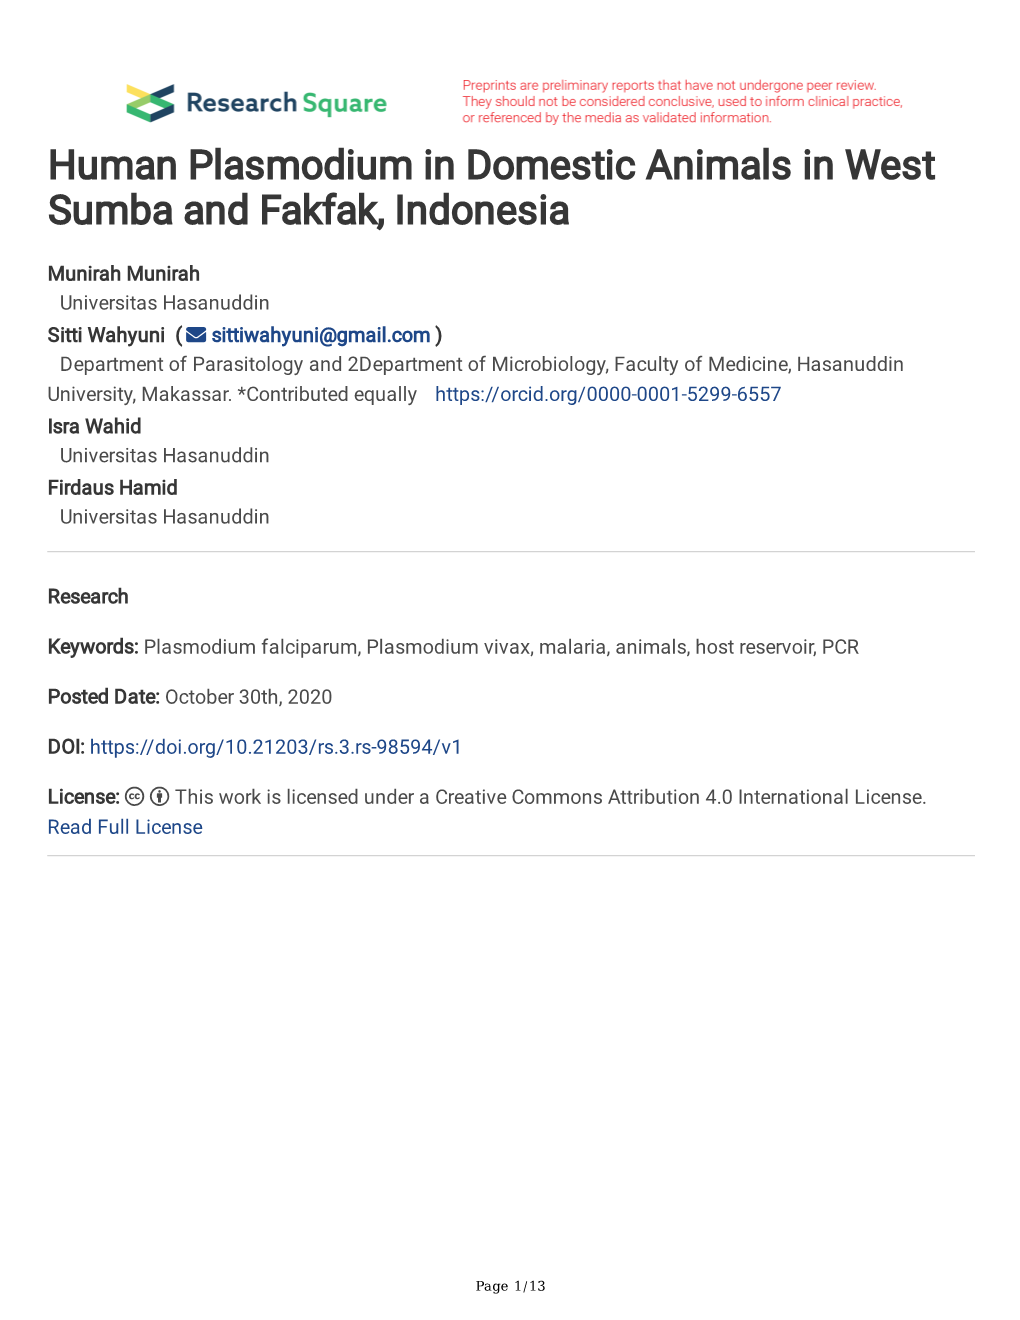 Human Plasmodium in Domestic Animals in West Sumba and Fakfak, Indonesia